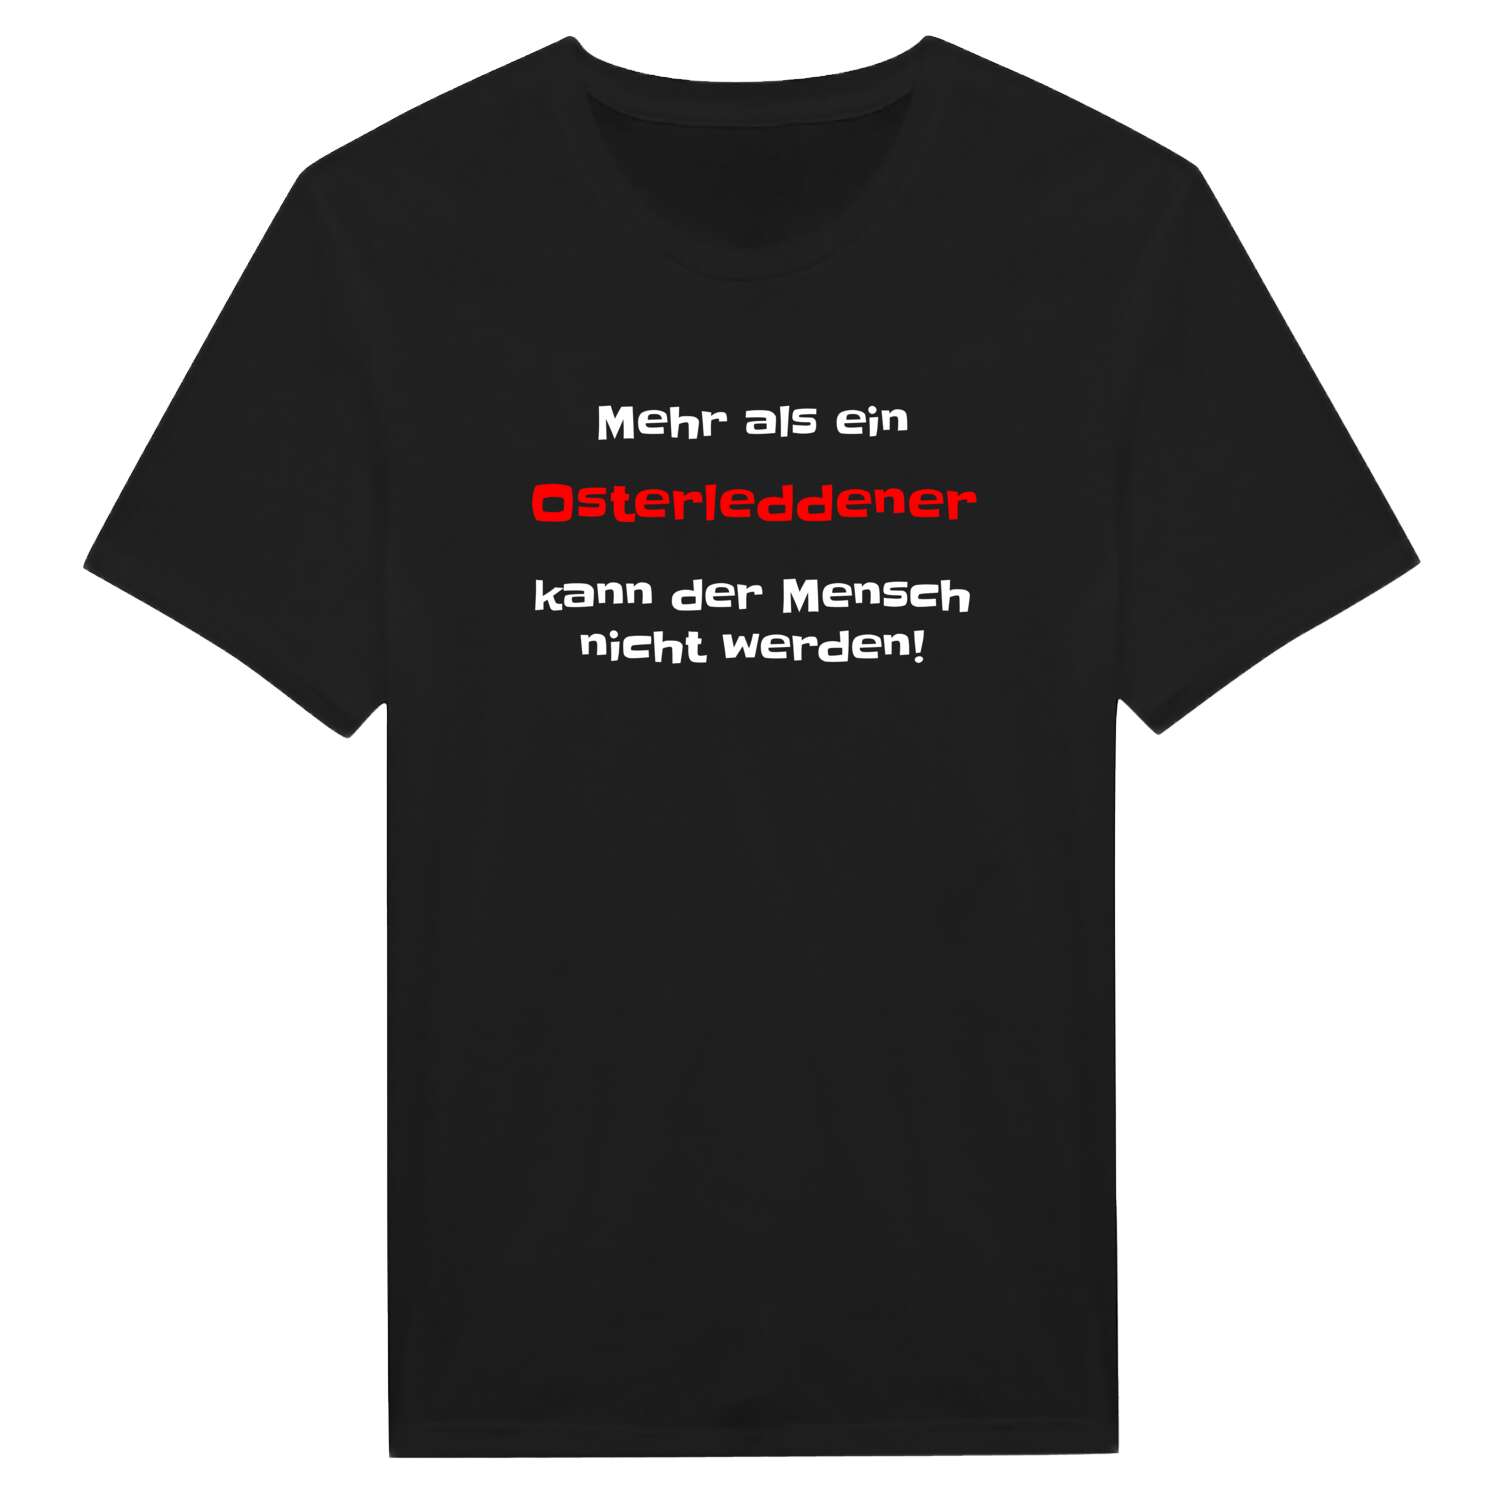 Osterledde T-Shirt »Mehr als ein«